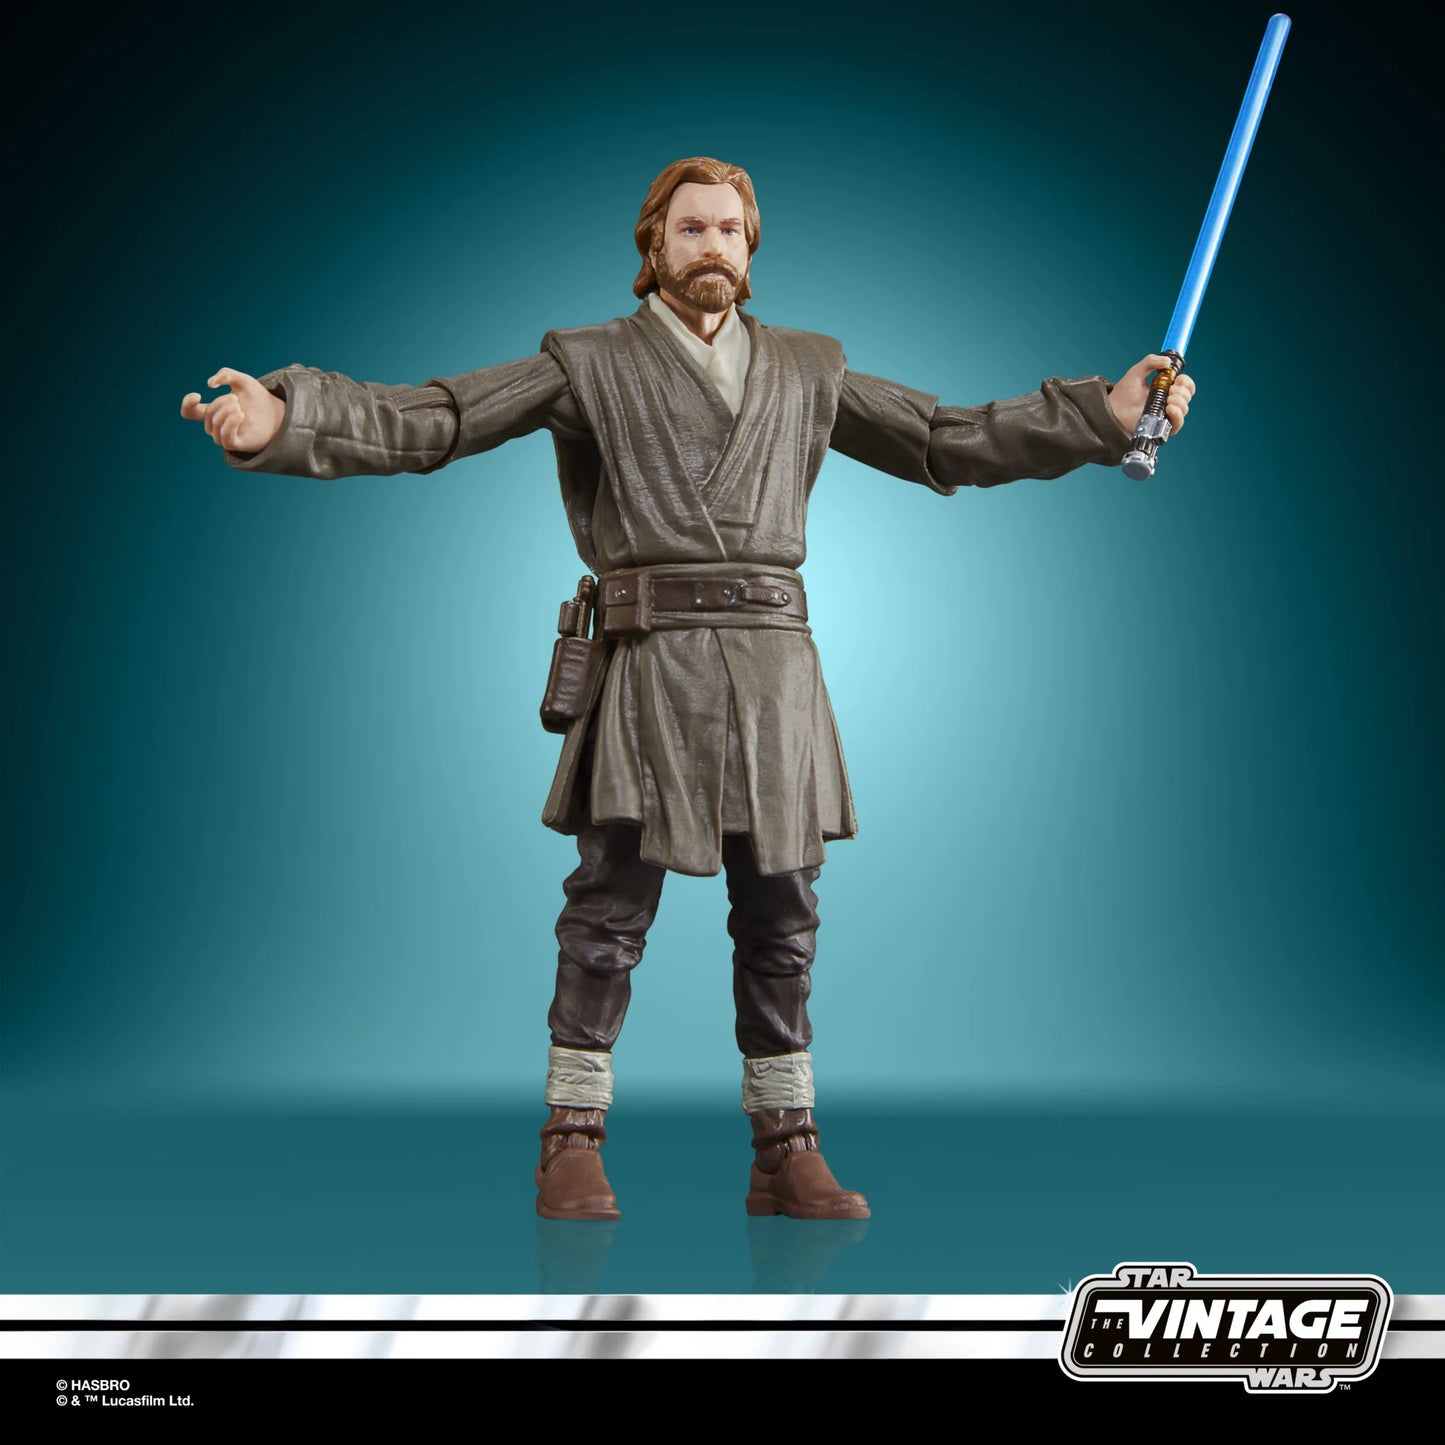 Star Wars The Vintage Collection: VC290/291 - Obi-Wan Kenobi & Darth Vader 2-Pack